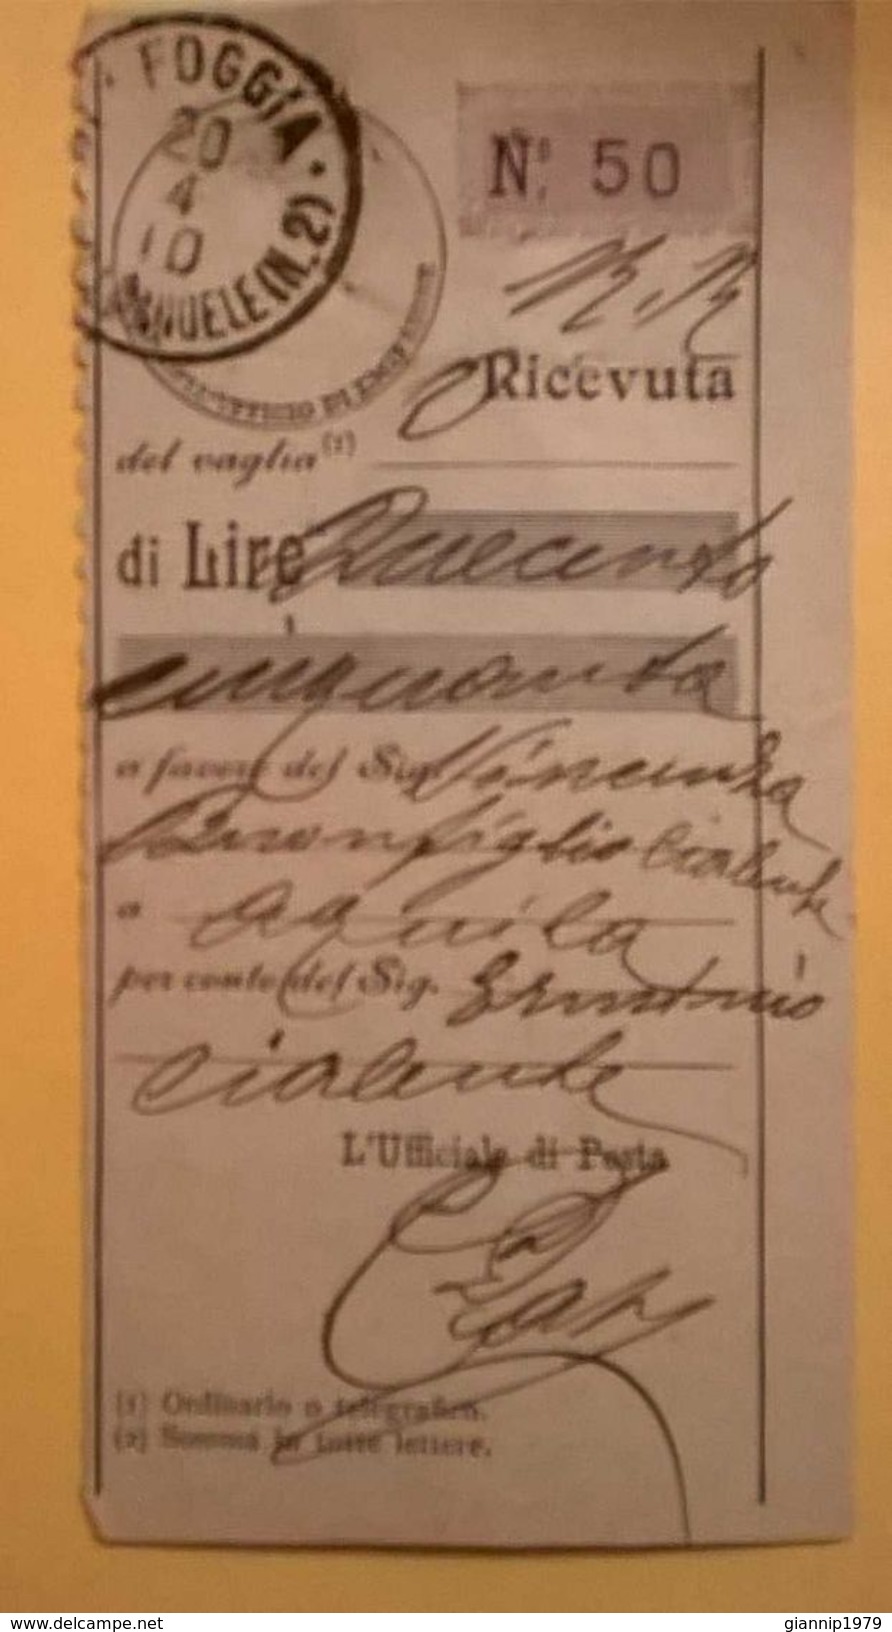 VAGLIA POSTALE RICEVUTA FOGGIA 1910 - Tax On Money Orders